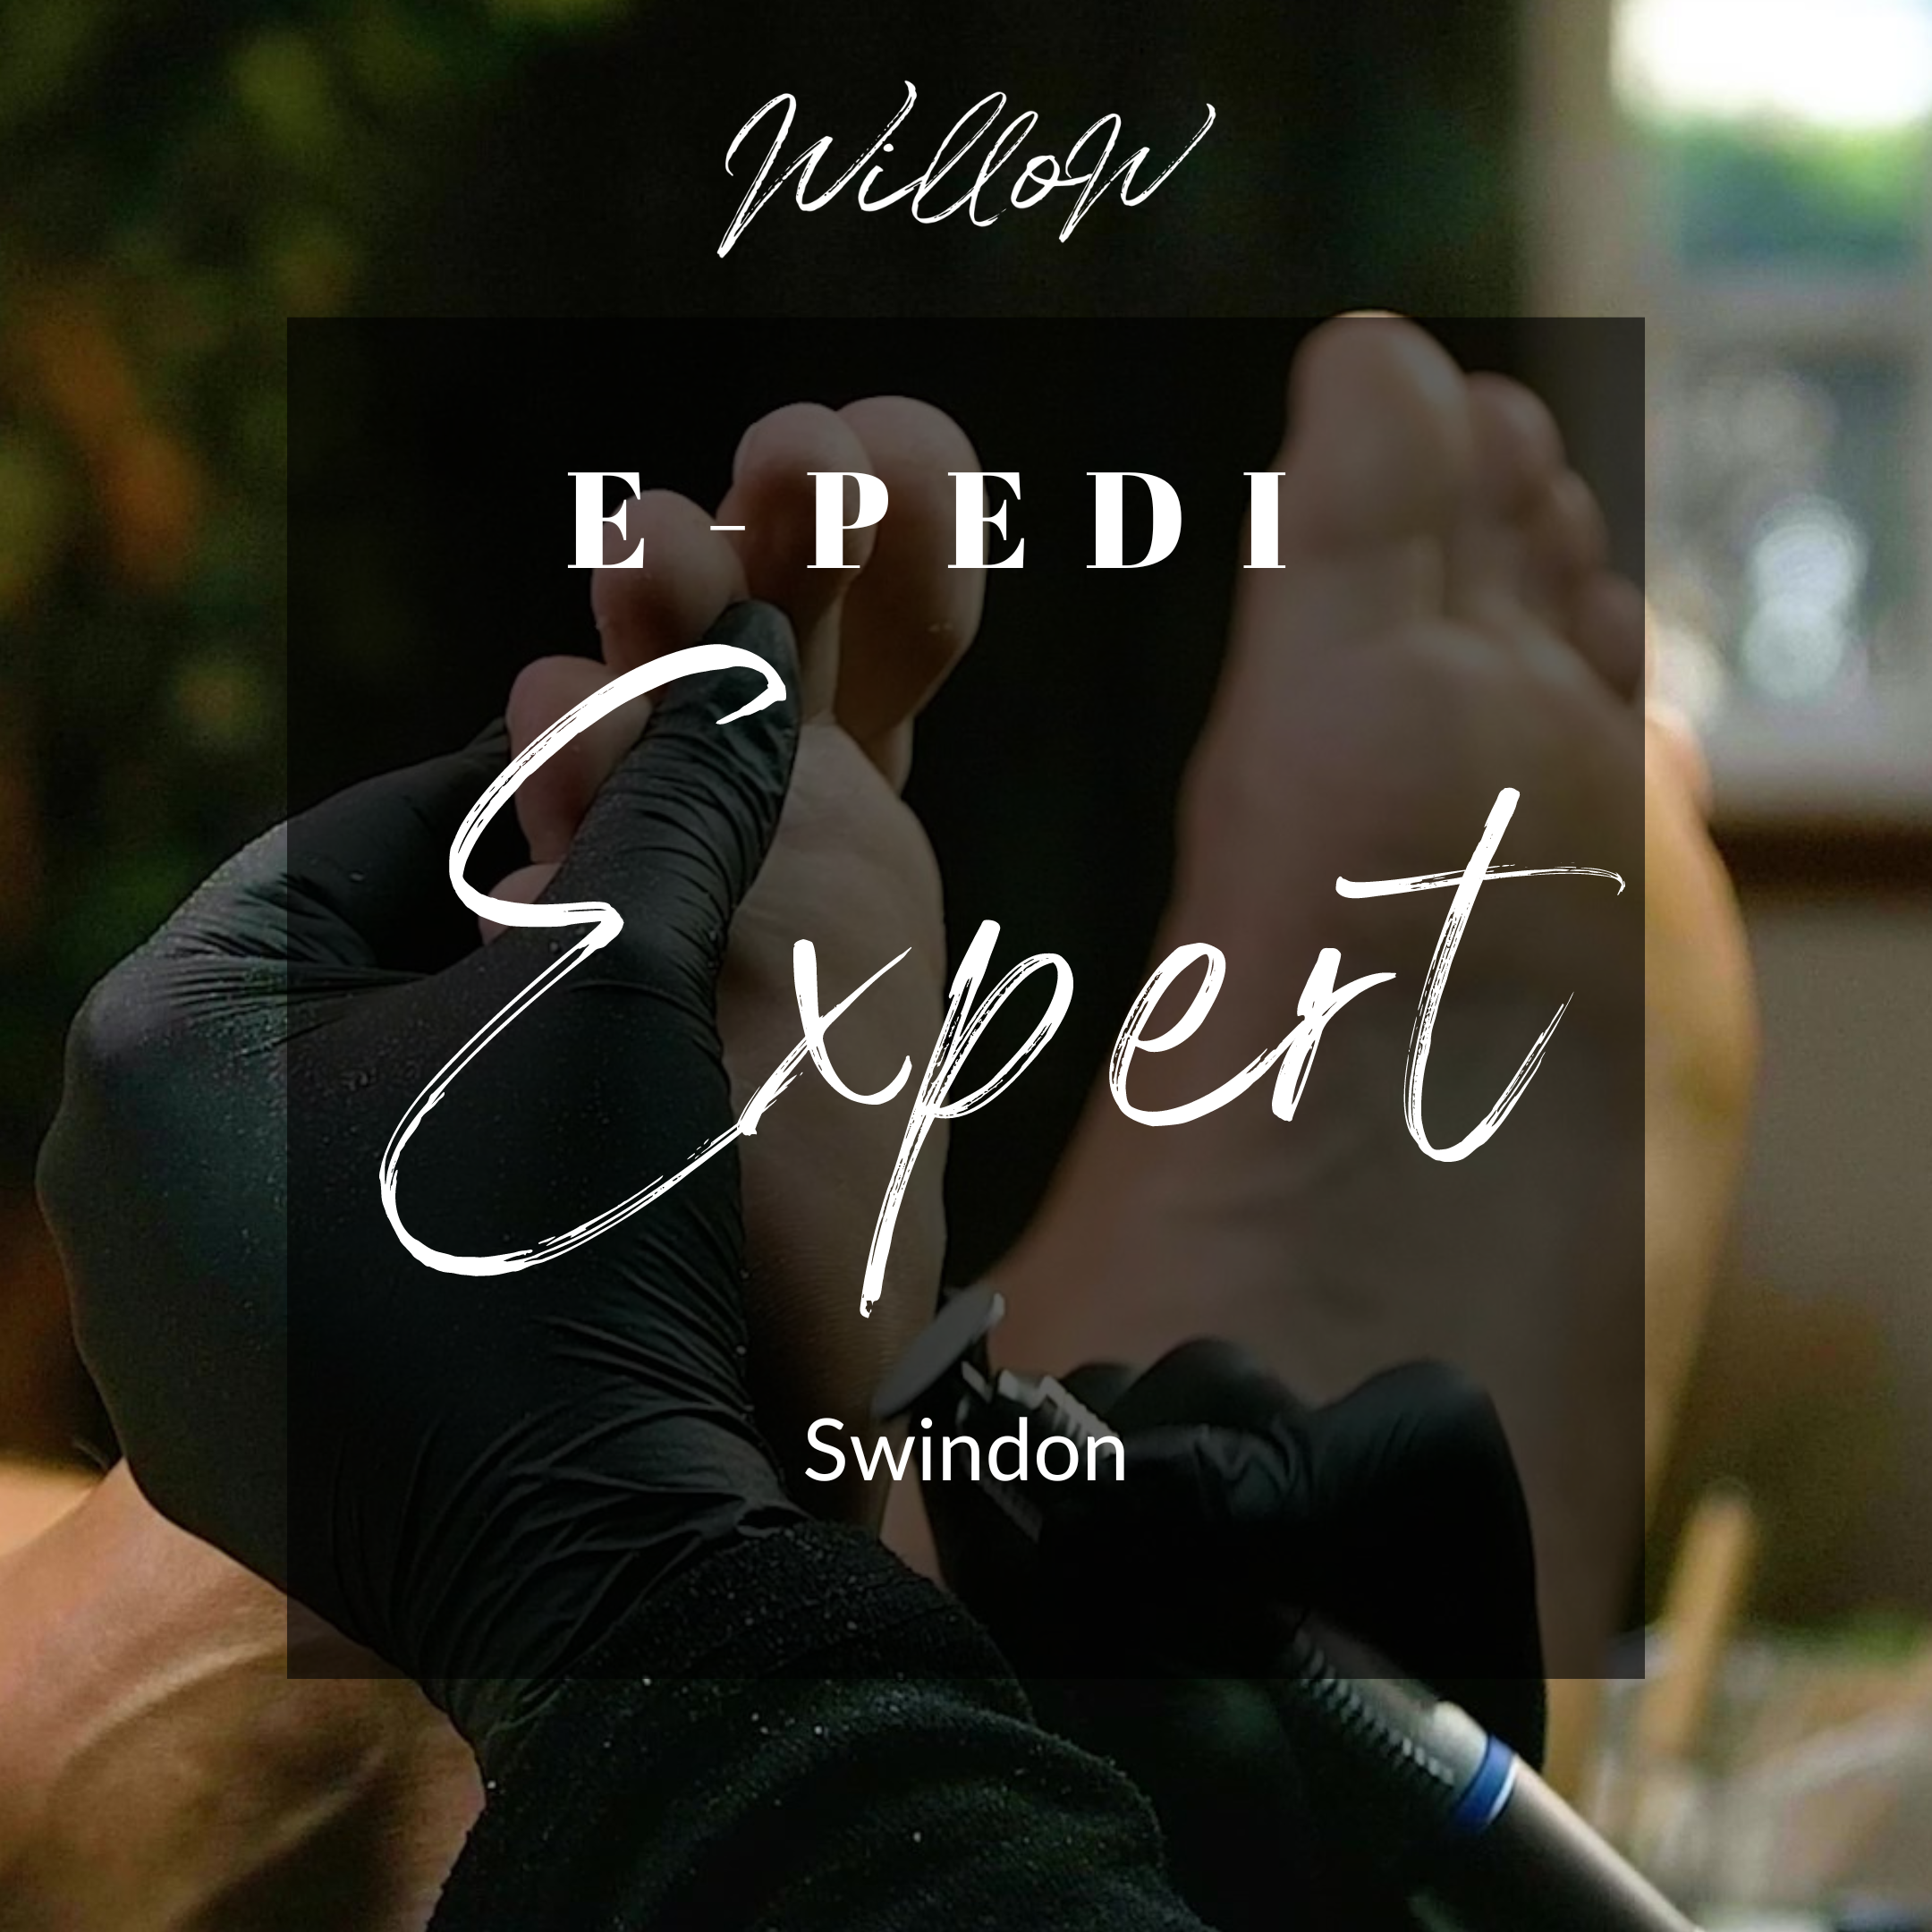 E-Pedi Expert Course - Swindon